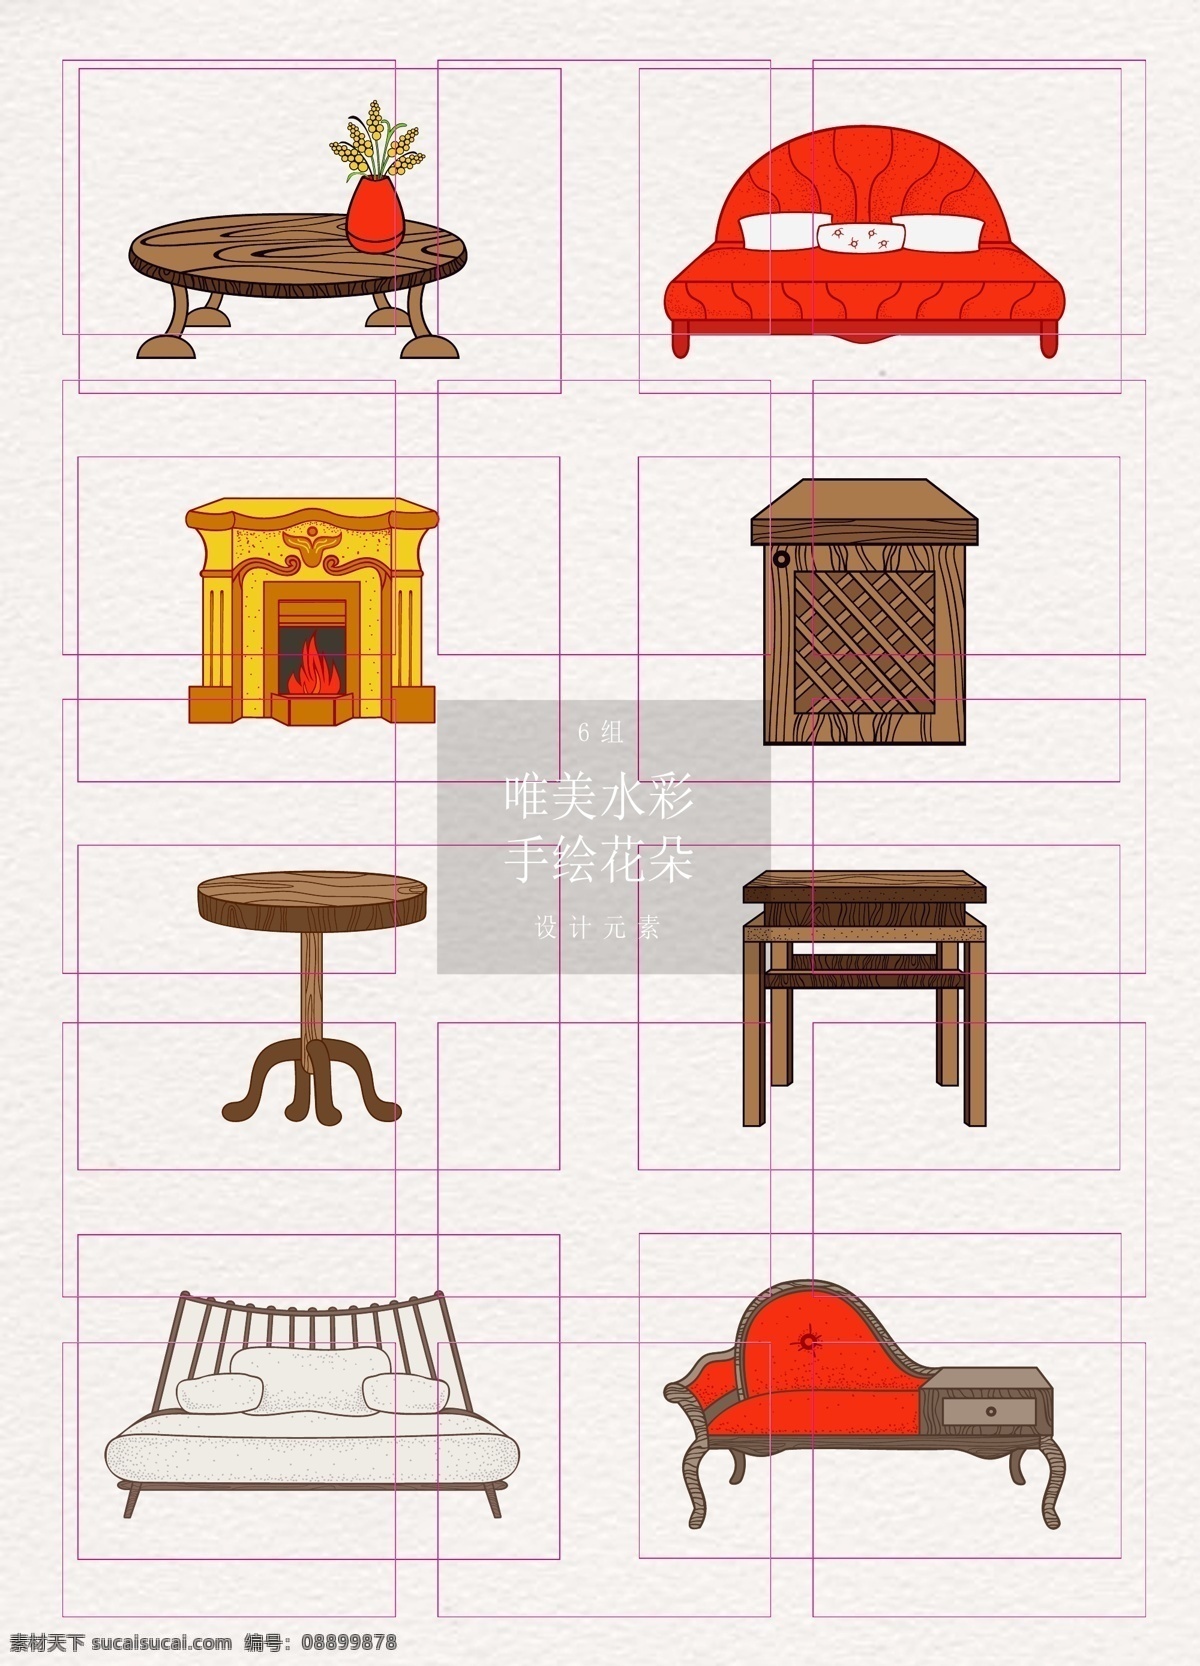 彩绘 矢量 家具 元素 桌子 床 火锅 矢量图 ai元素 壁炉 沙发床